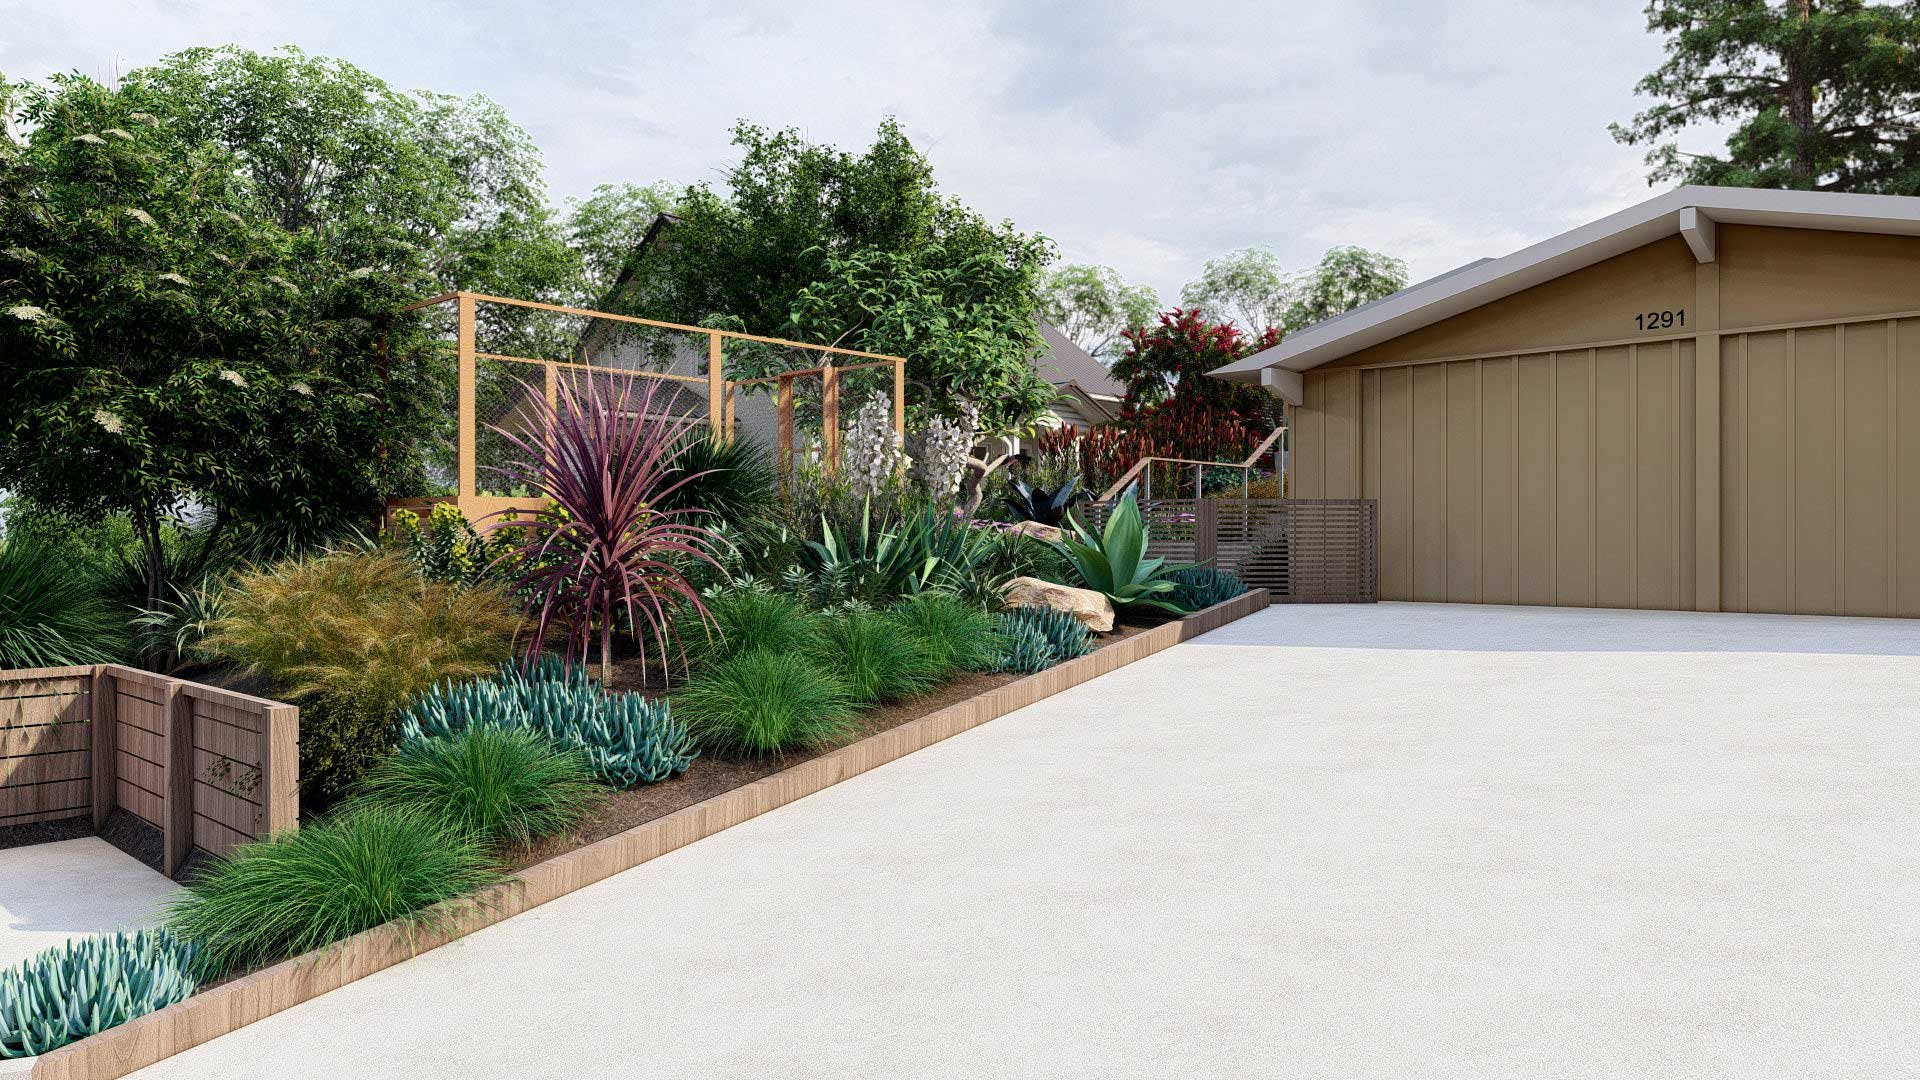 Vegetable bed near garage and driveway on sloped front yard landscape design